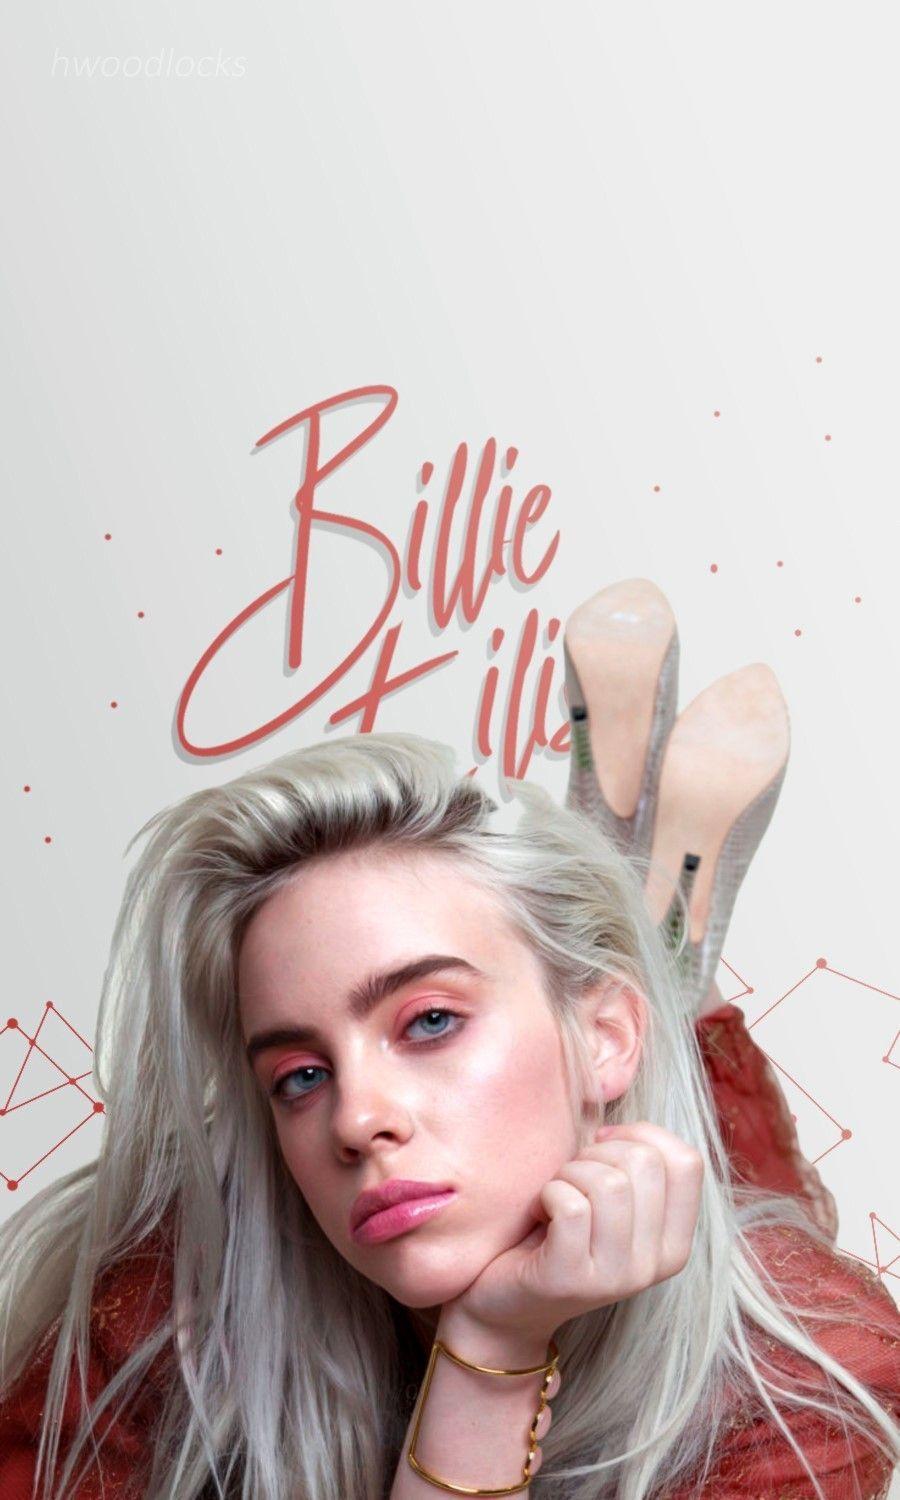 Billie Eilish Wallpaper. Billie eilish, Billie, Aesthetic videos